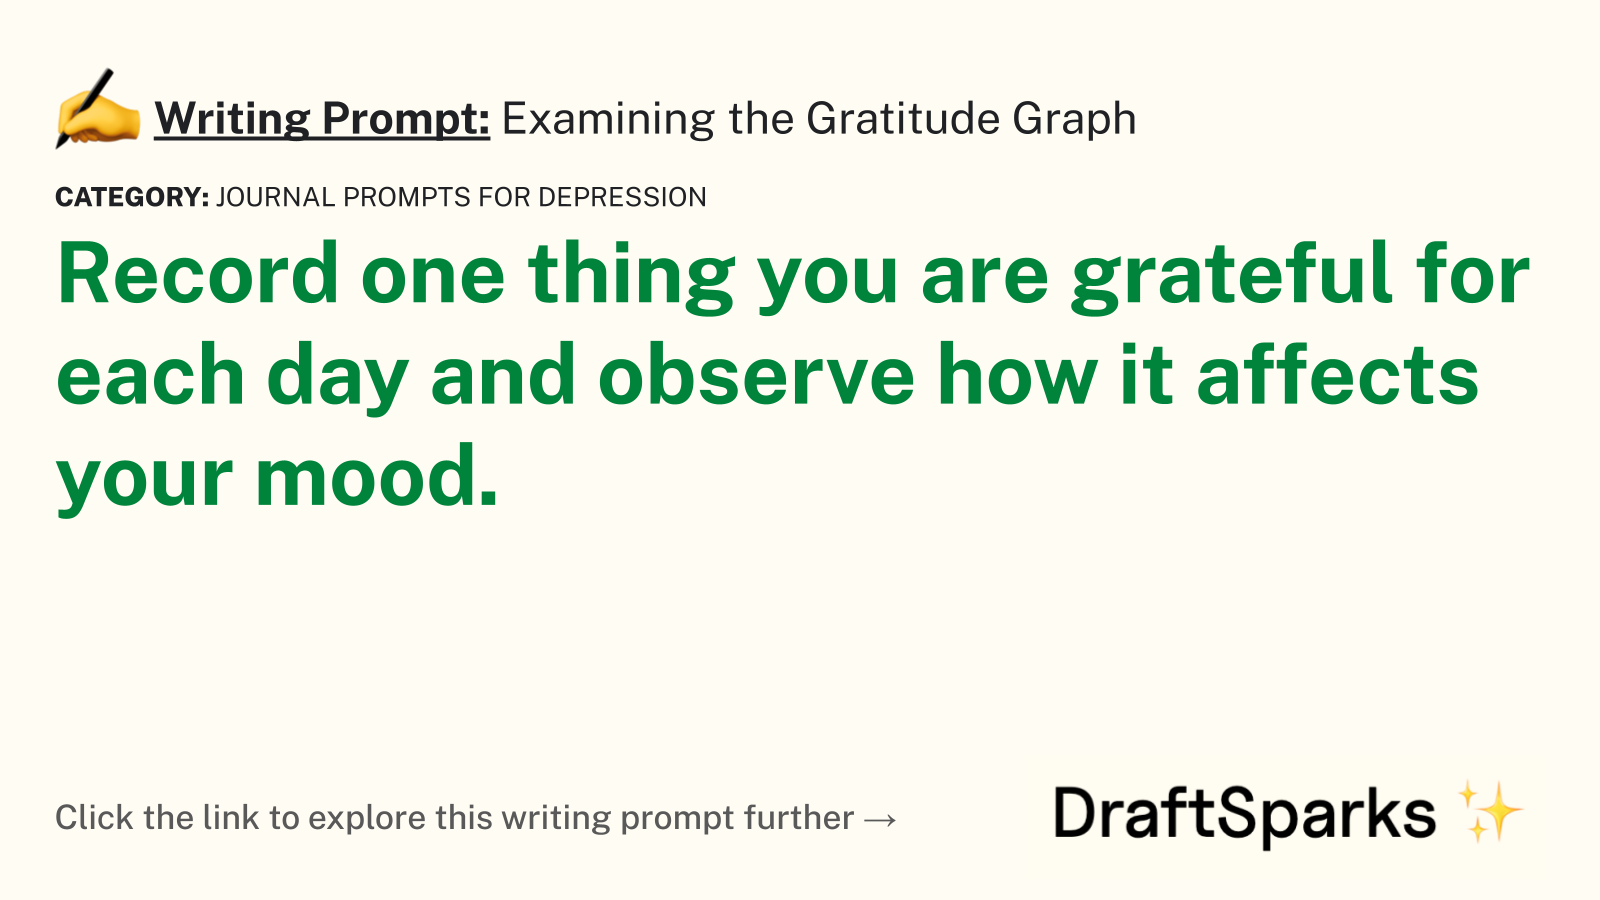 Examining the Gratitude Graph